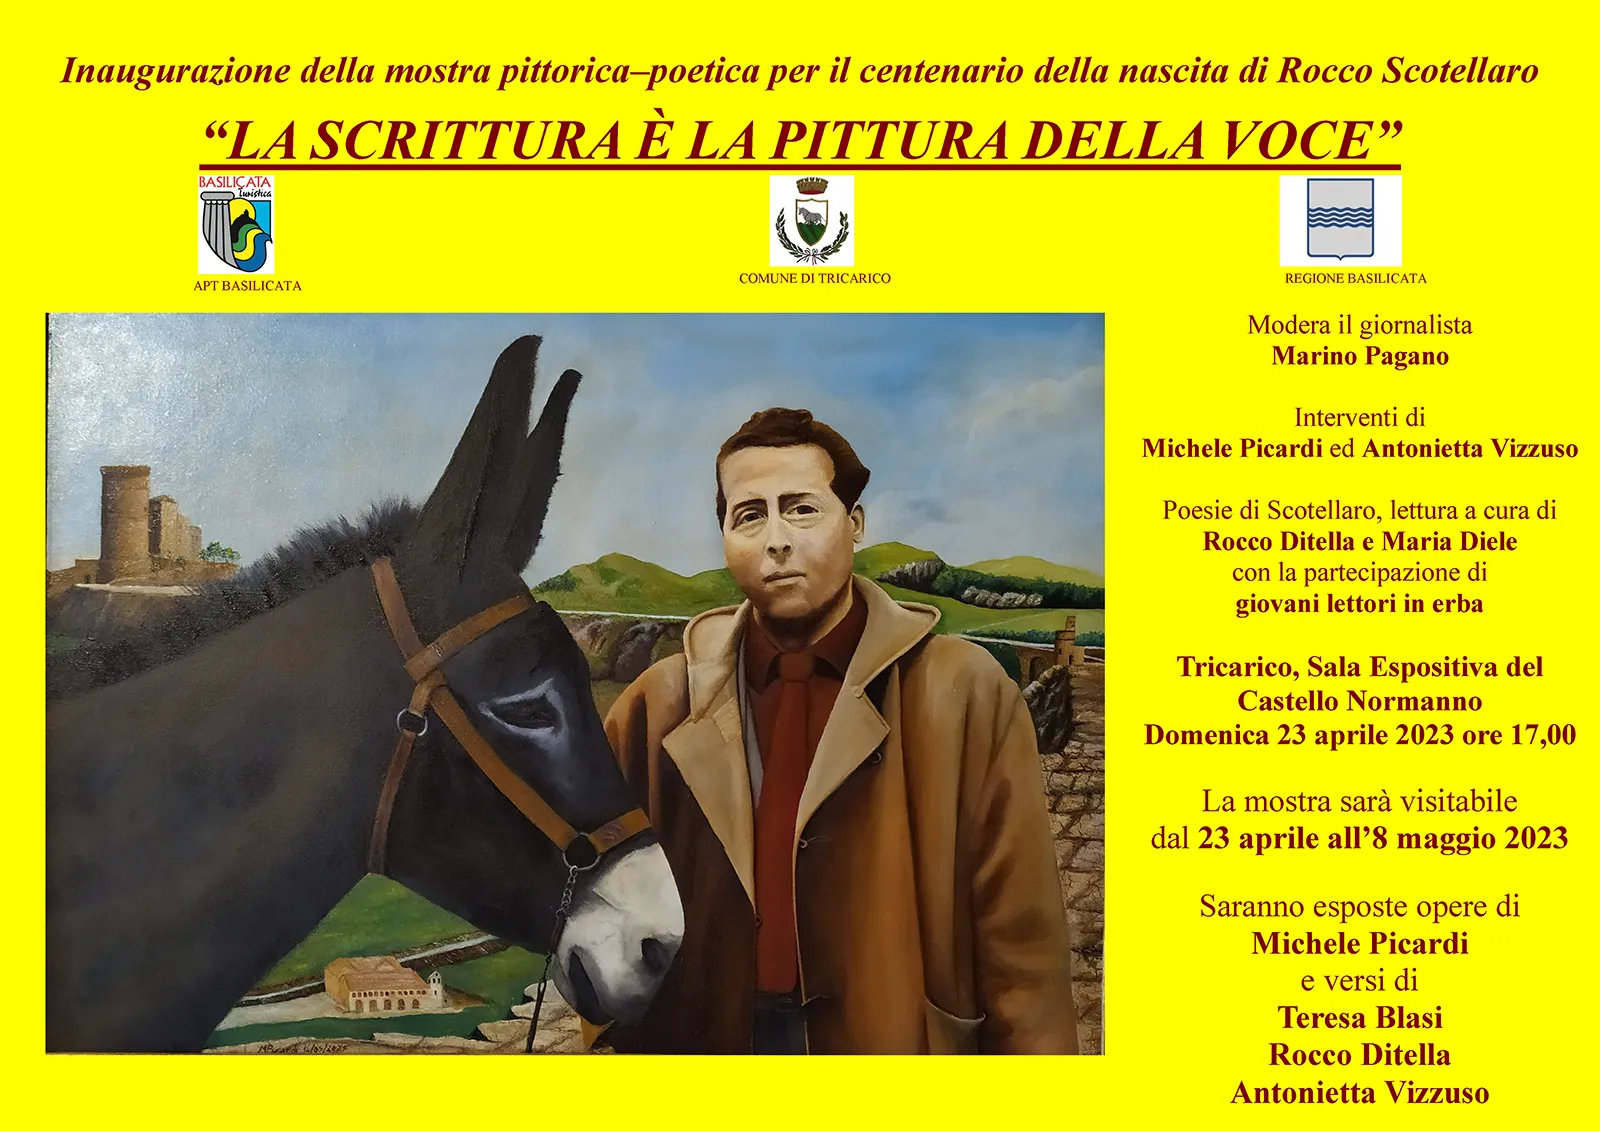 Mostra pittorico-poetica per il centenario della nascita di Rocco Scotellaro